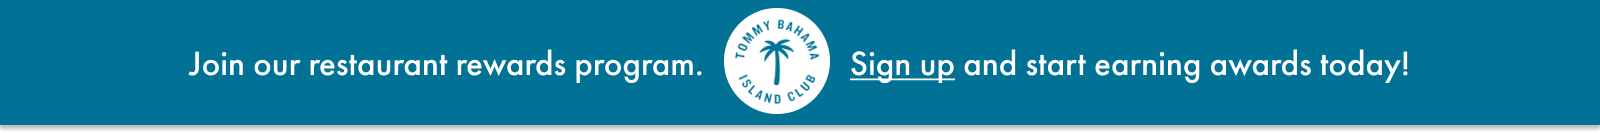 Tommy Bahama Rewards Program Sign Up Link